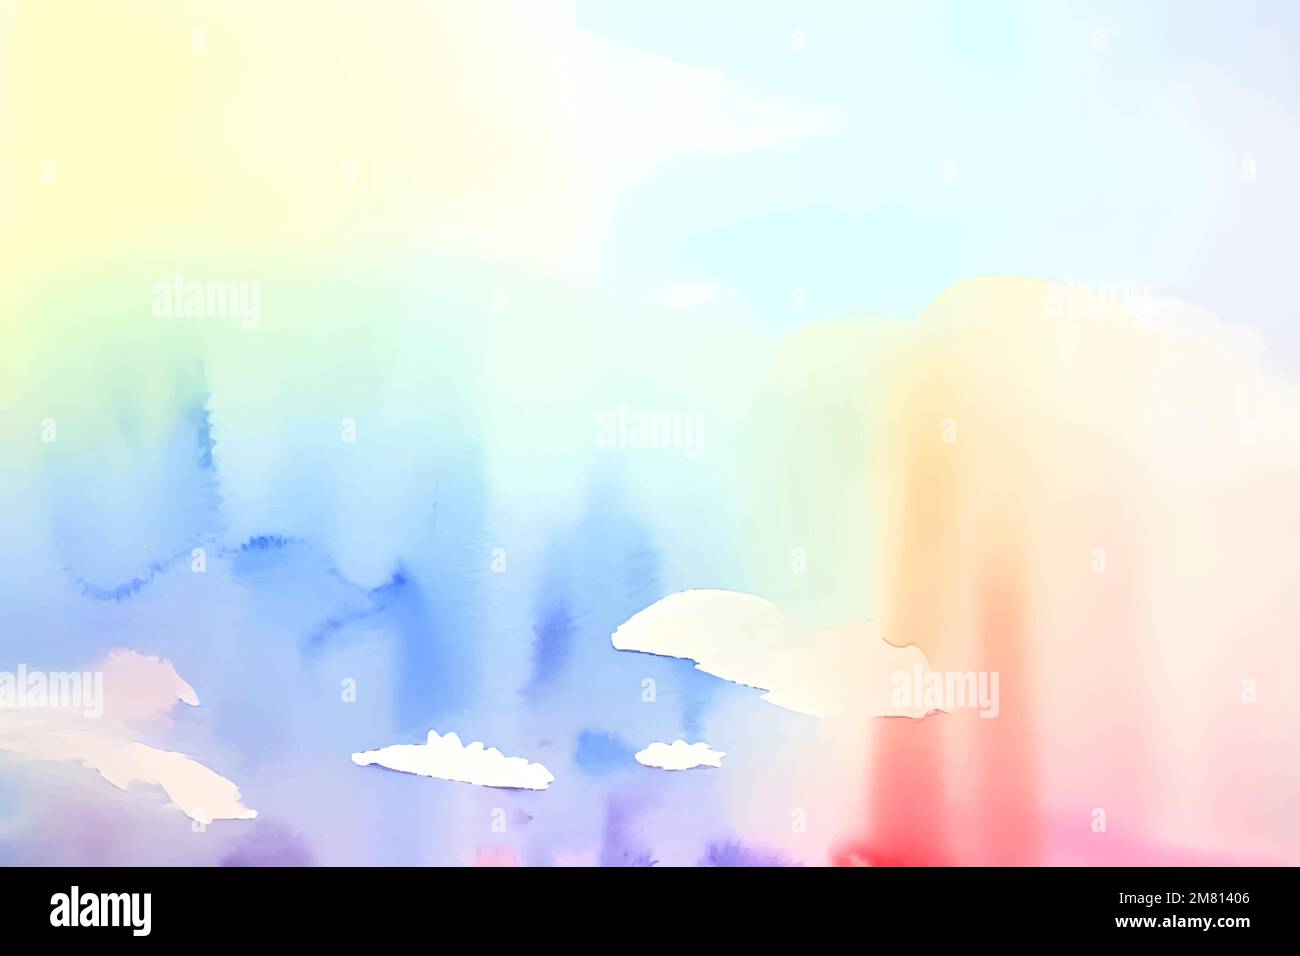 Handgefertigte Illustration von farbenfrohen pastellfarbenen Aquarellen, mehrfarbigen abstrakten Farbspritzern auf weißem Papierhintergrund, vektorfarbenen Wolken. Stock Vektor